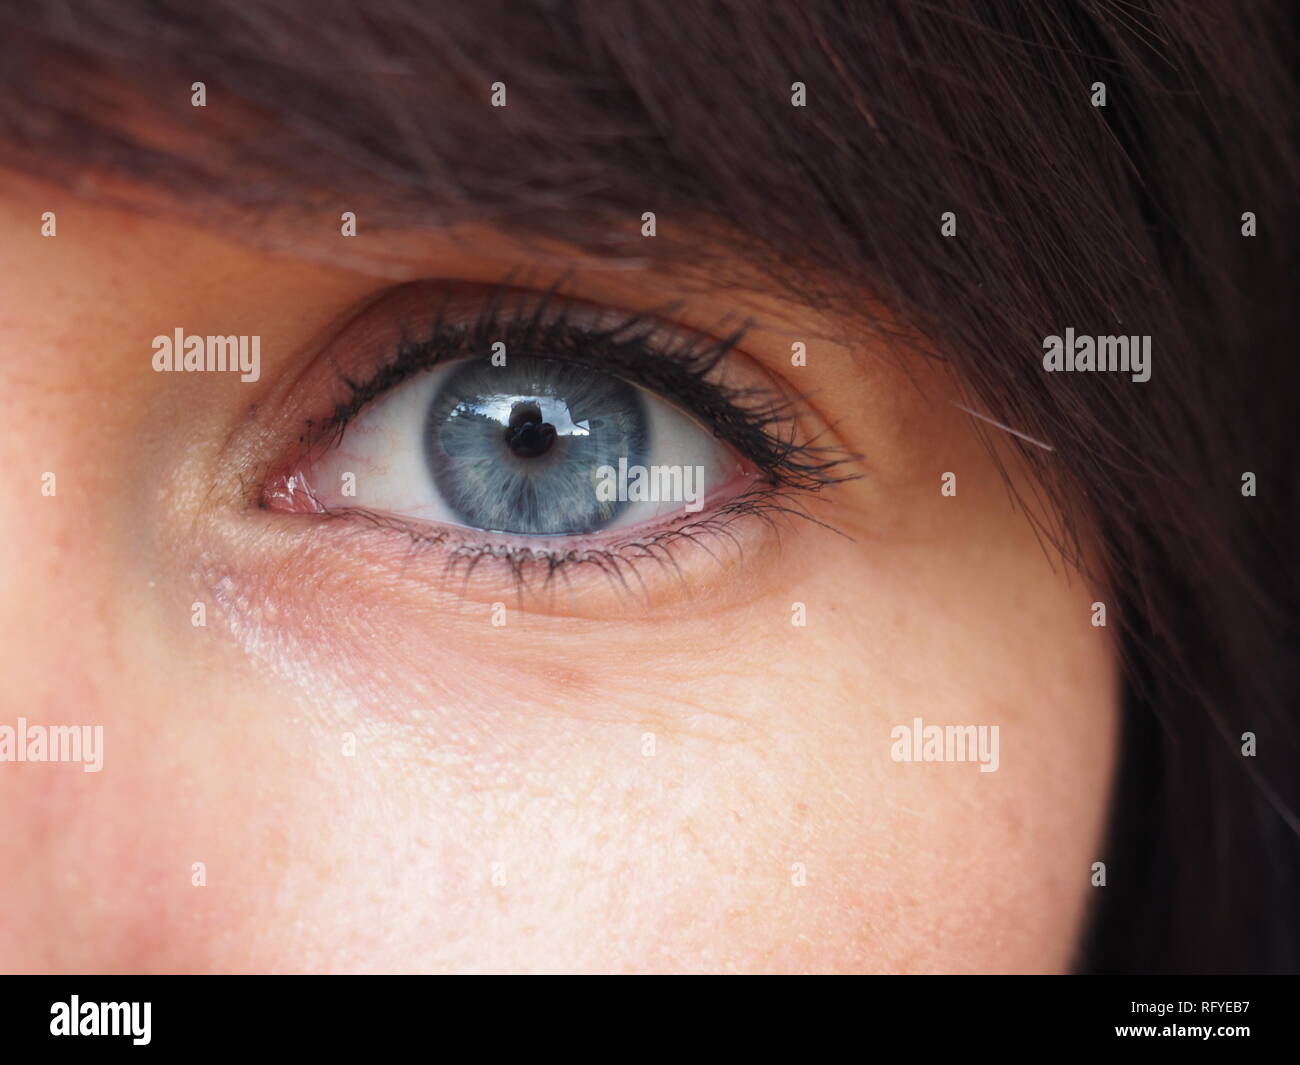 Detail of a woman's blue eye Stock Photo